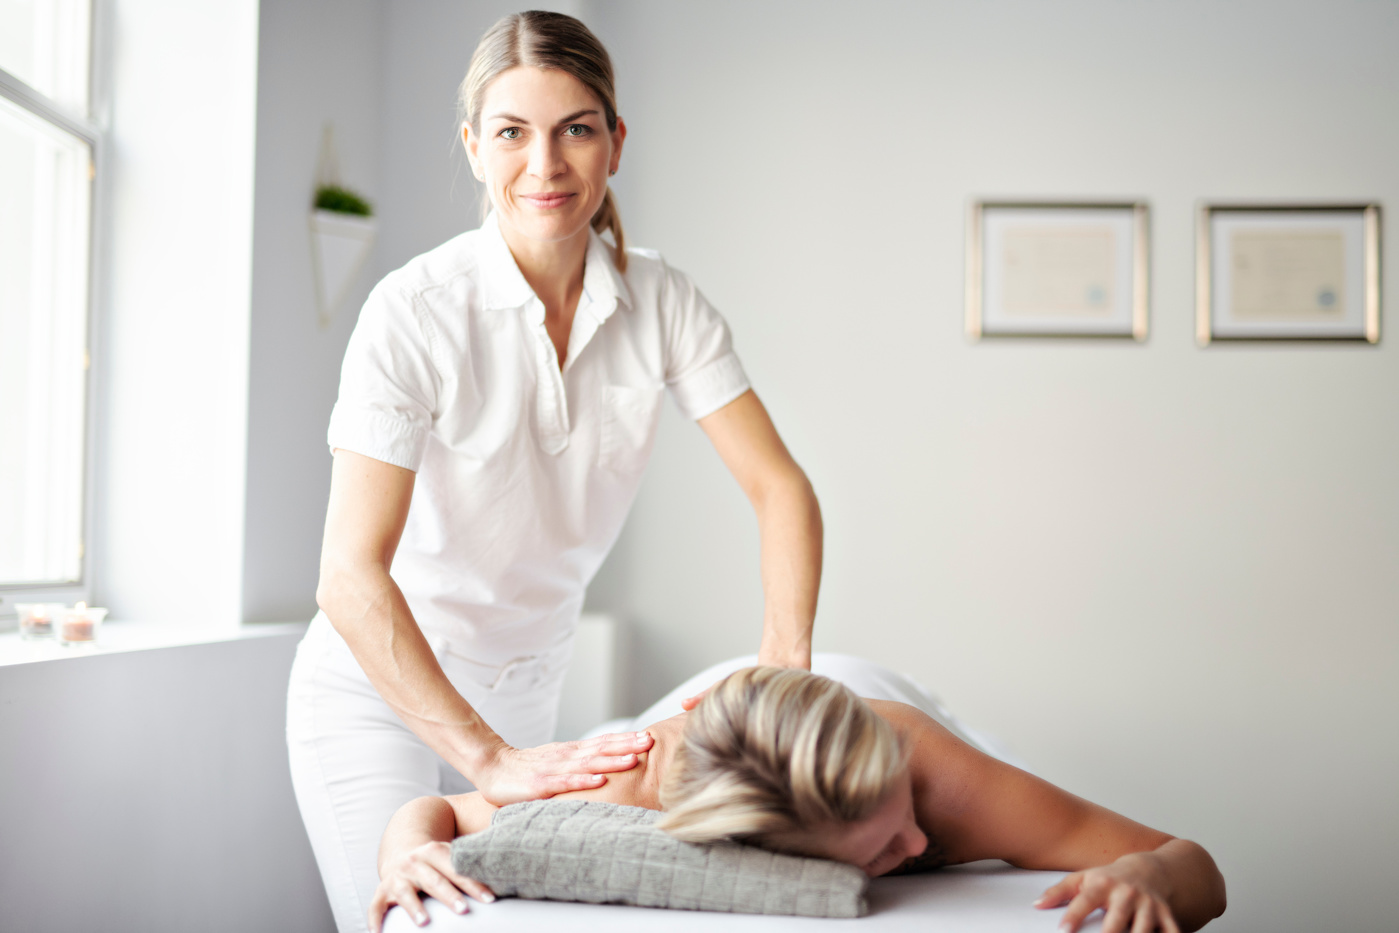 Una massaggiatrice con attestato federale massaggia le aree tese del paziente per alleviare il dolore.